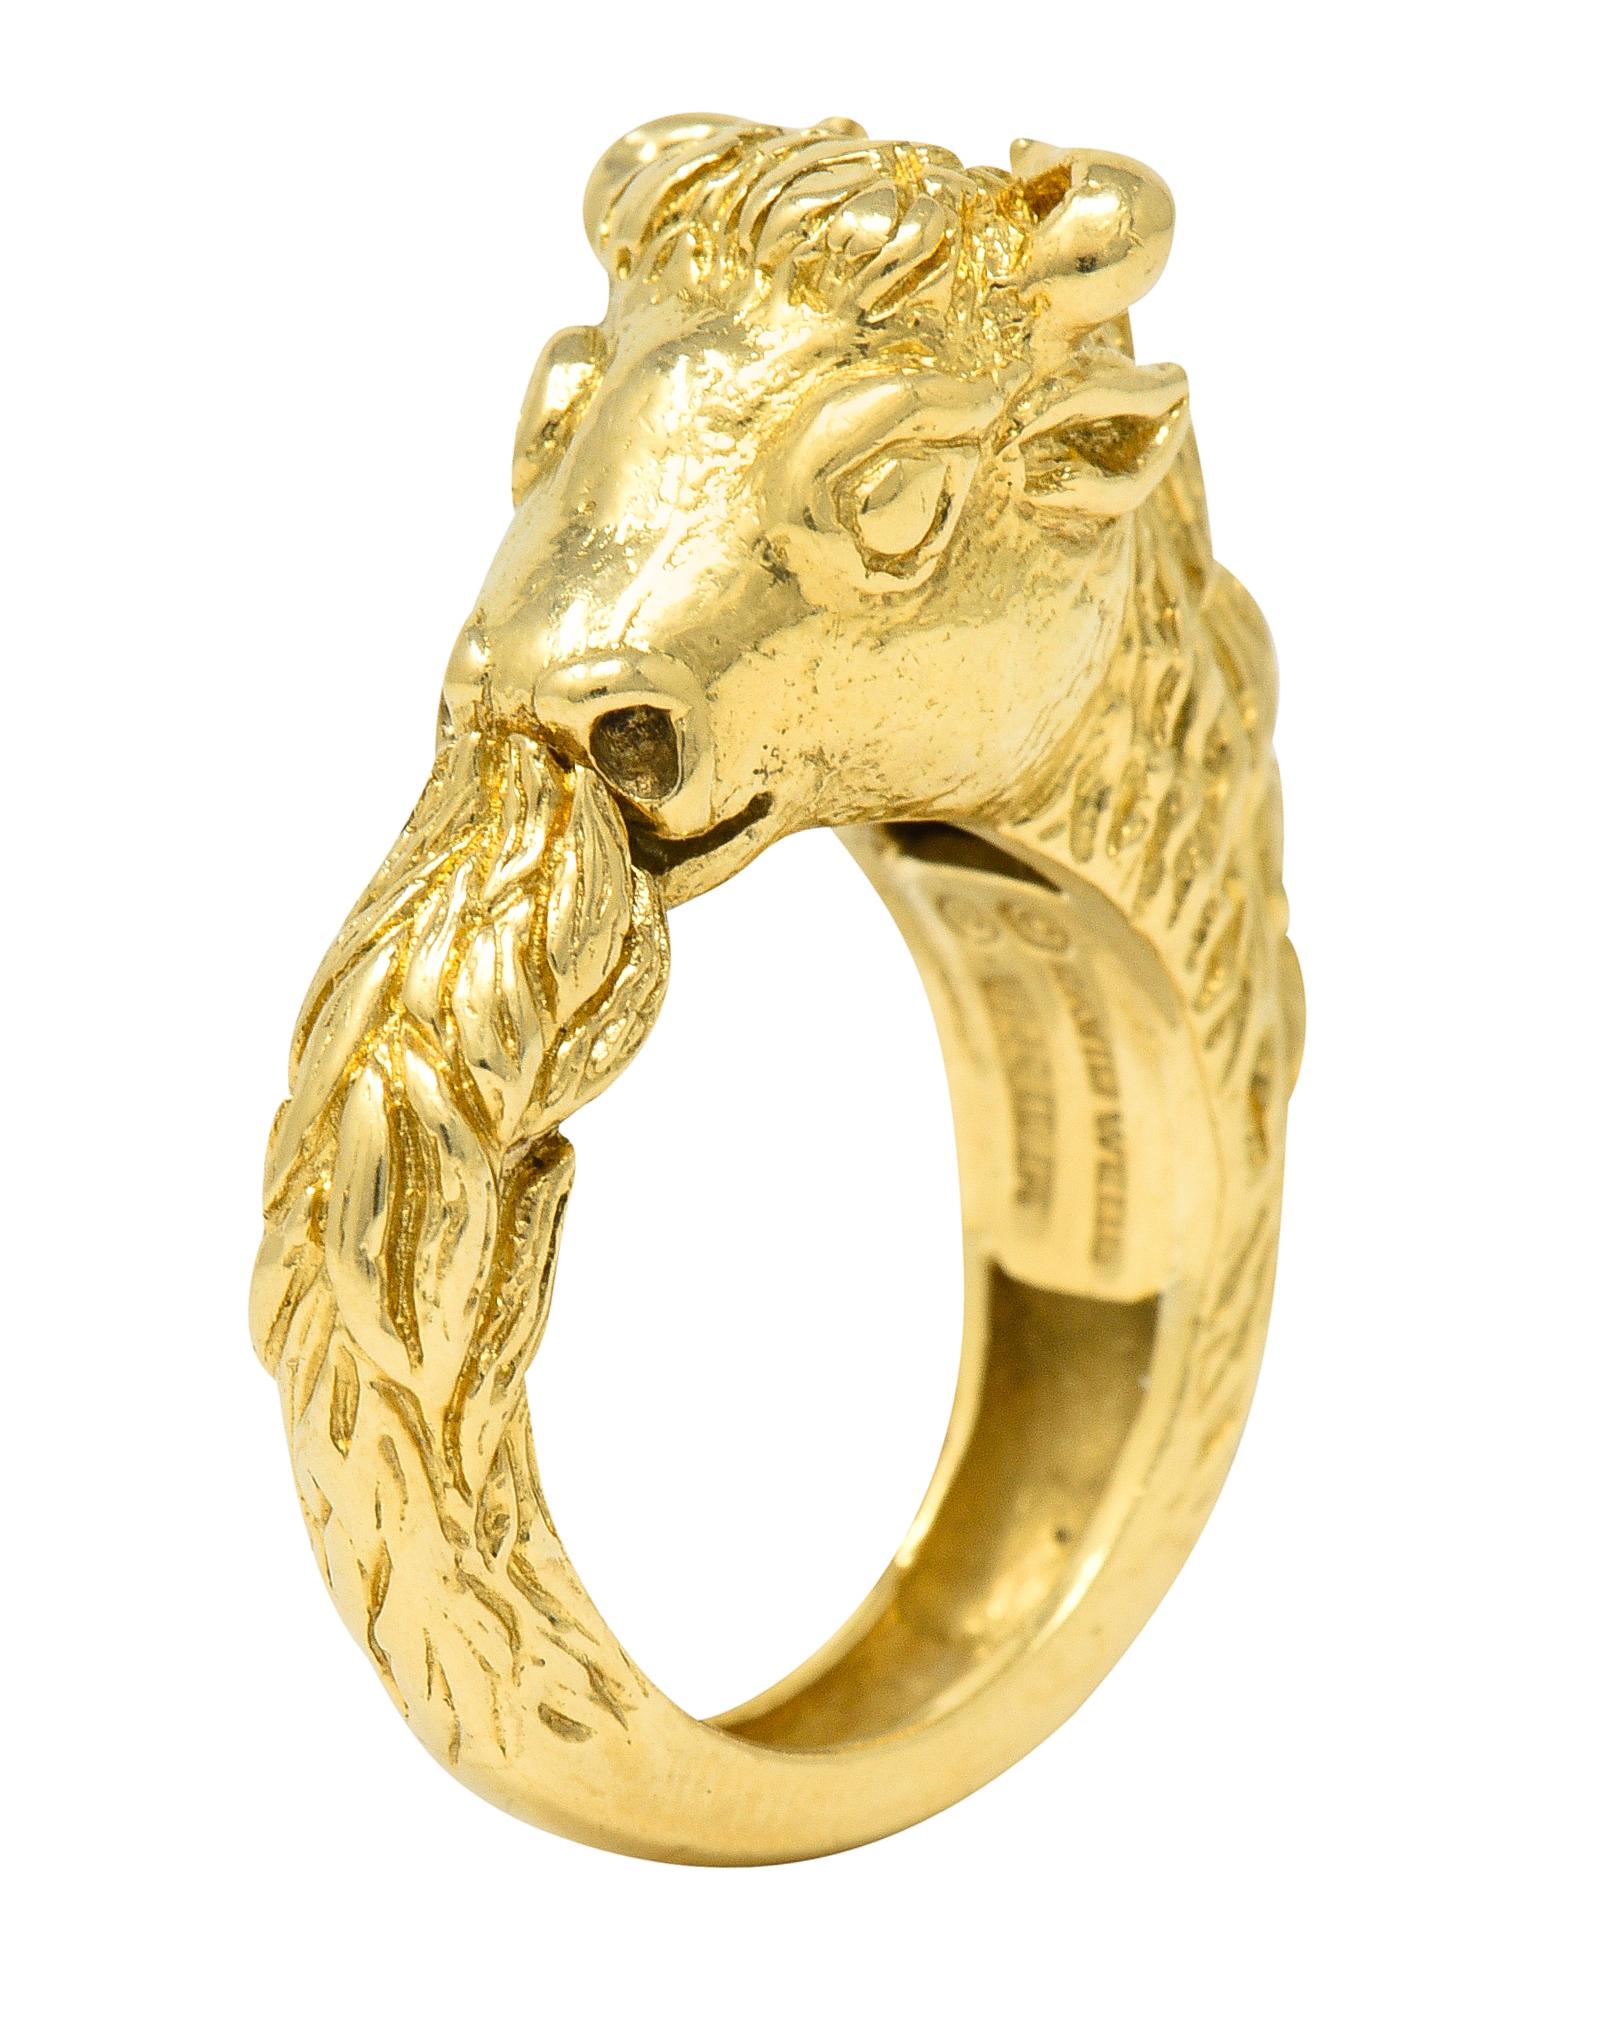 David Webb Vintage 18 Karat Yellow Gold Taurus Bull Kingdom Ring 7